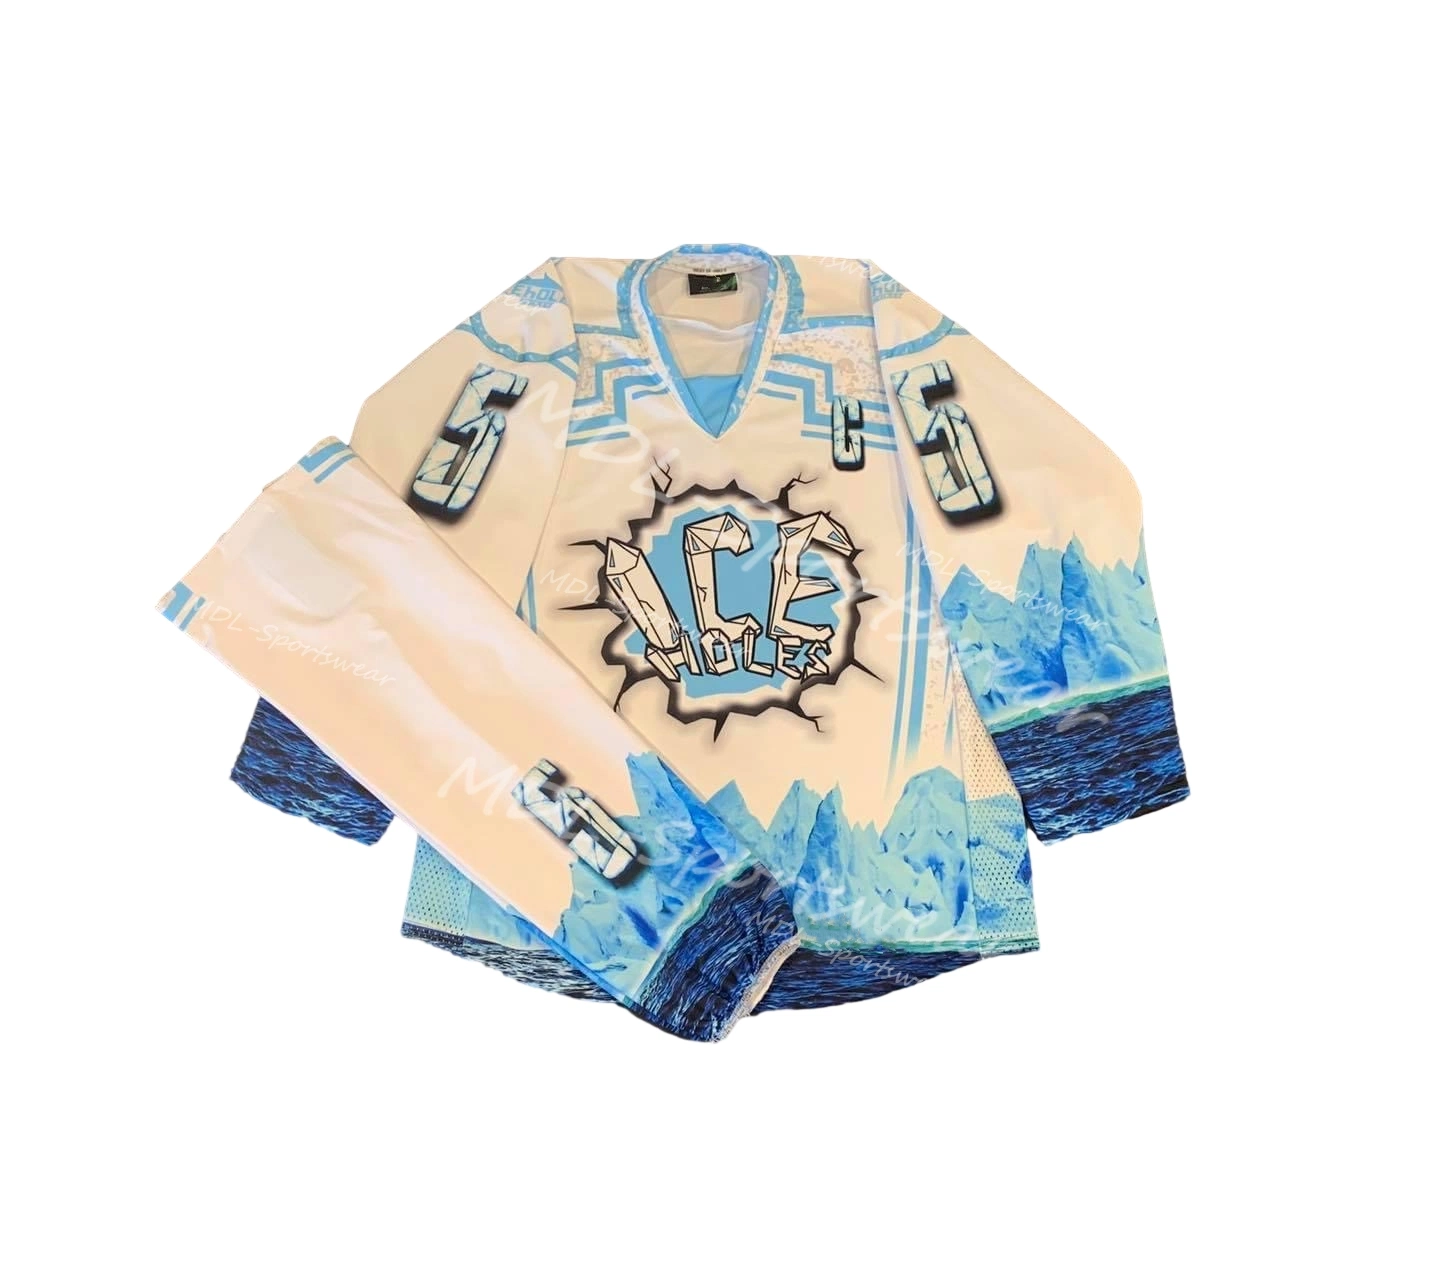 Cuello personalizado Doble material Equipo Juego práctica hielo en blanco Jersey de práctica de hockey